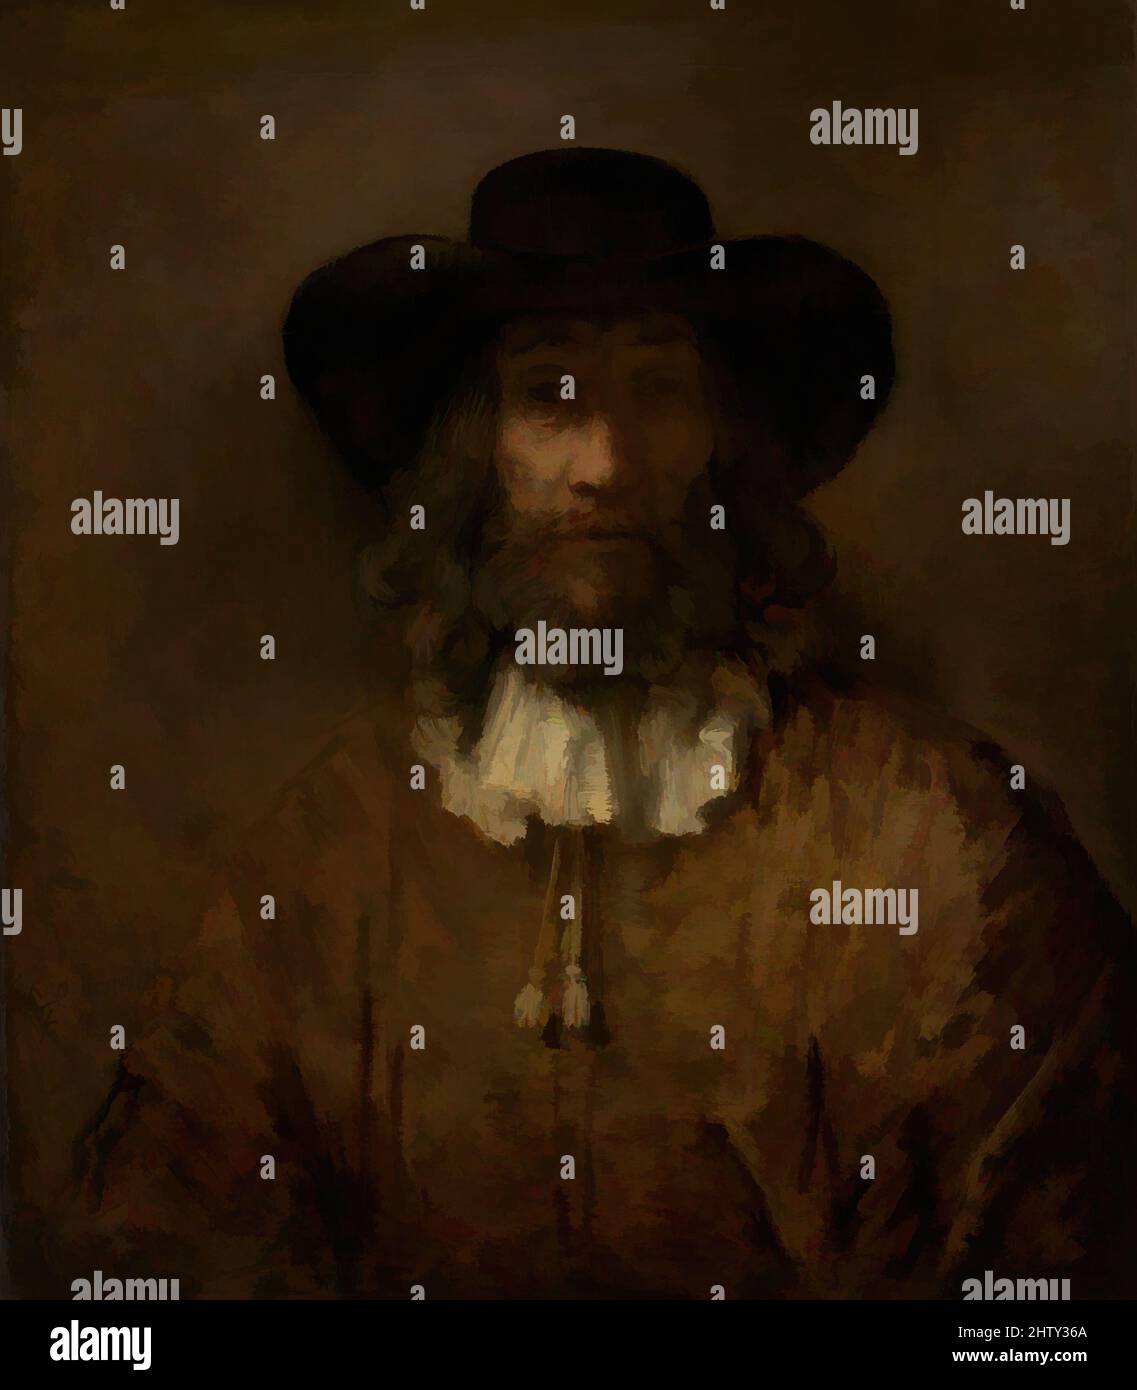 Stile di rembrandt 17 ° secolo o successivo immagini e fotografie stock ad  alta risoluzione - Alamy